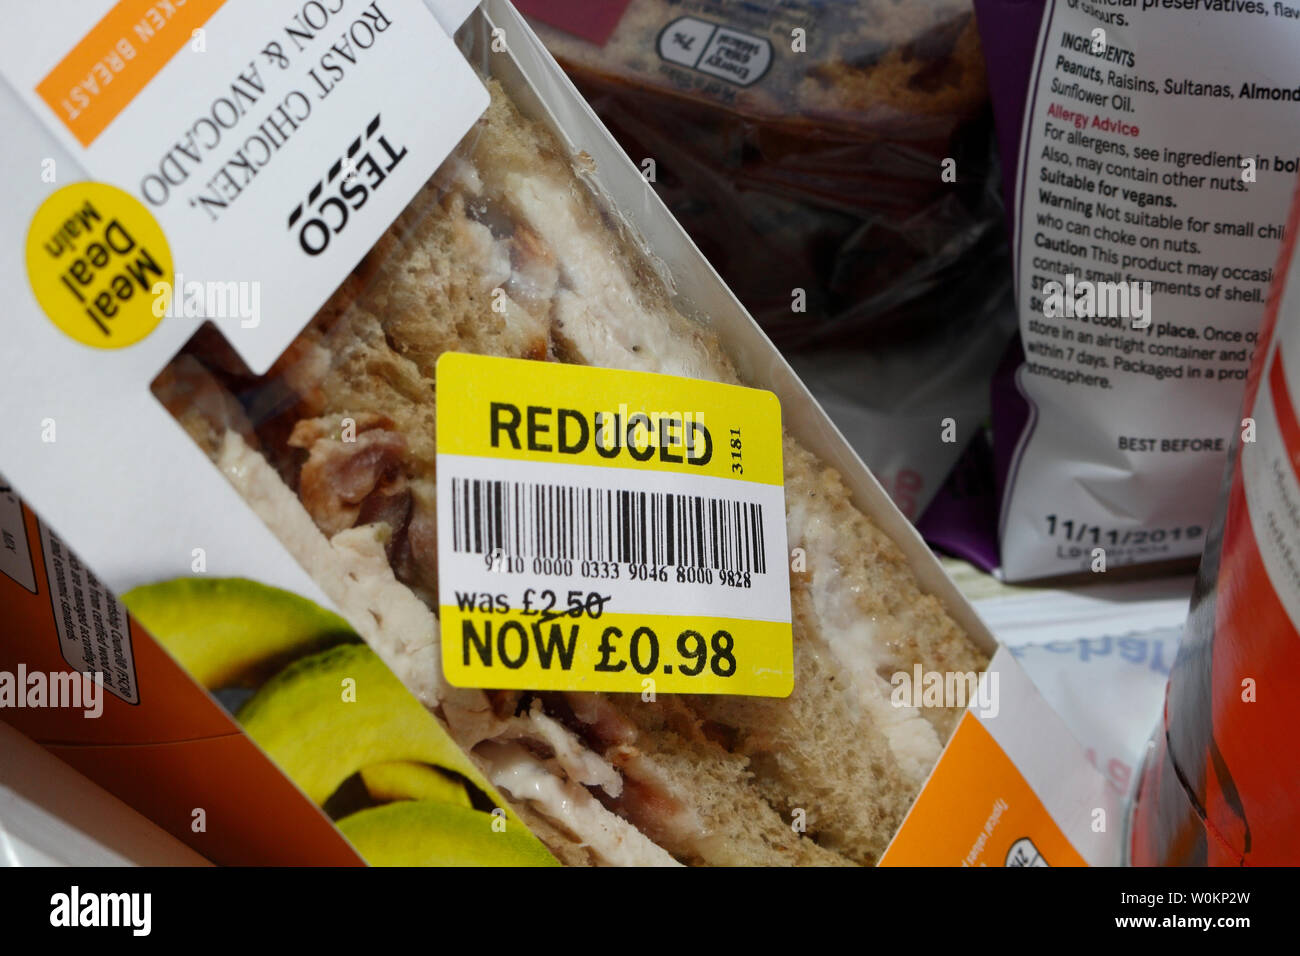 Reduced-price food packs